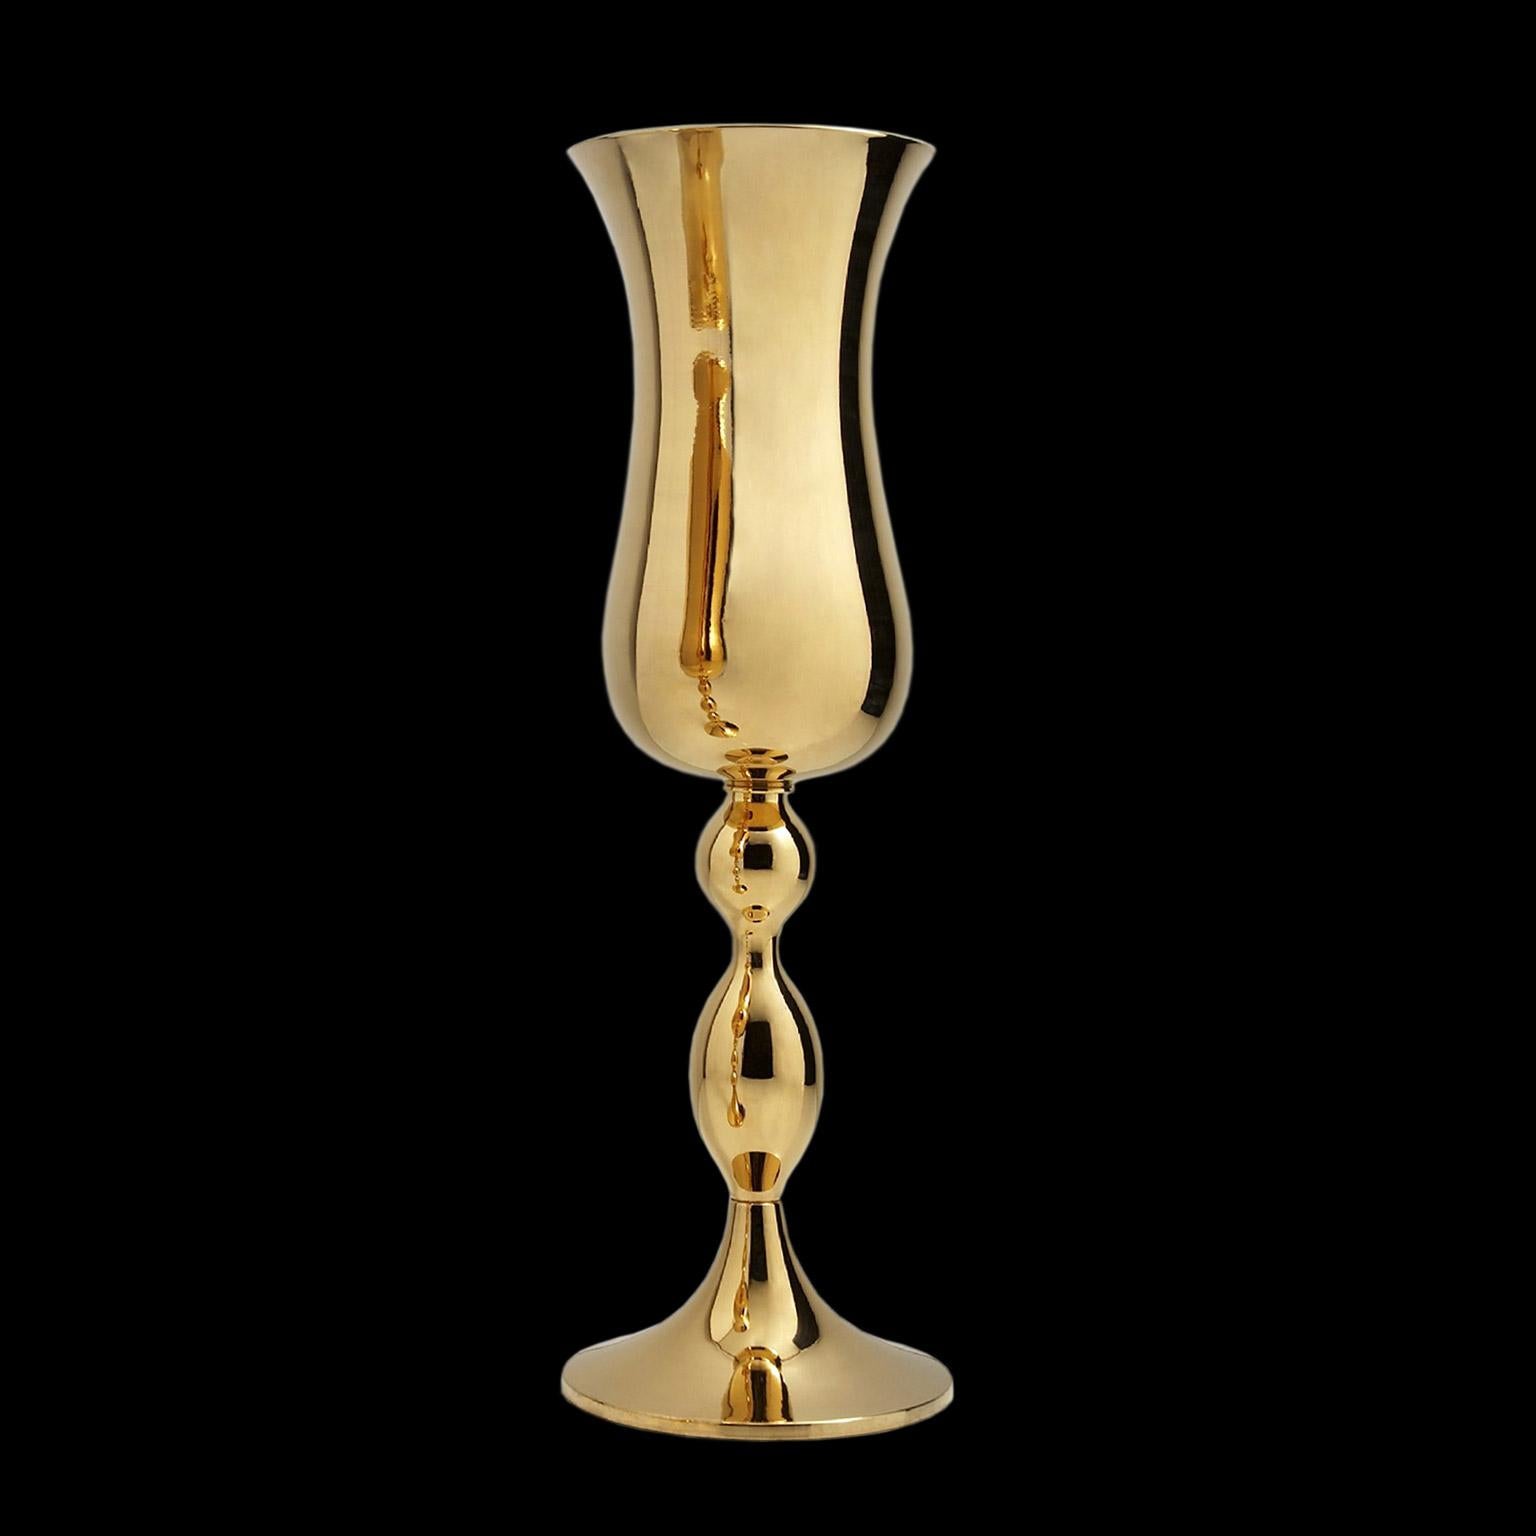 Keramik-Vase BOB 
kabeljau. CP005
handgefertigt aus 24-karätigem Gold außen
und innen weiß glasiert

messgeräte: 
Höhe 107,0 cm.
durchmesser 30,0 cm.
